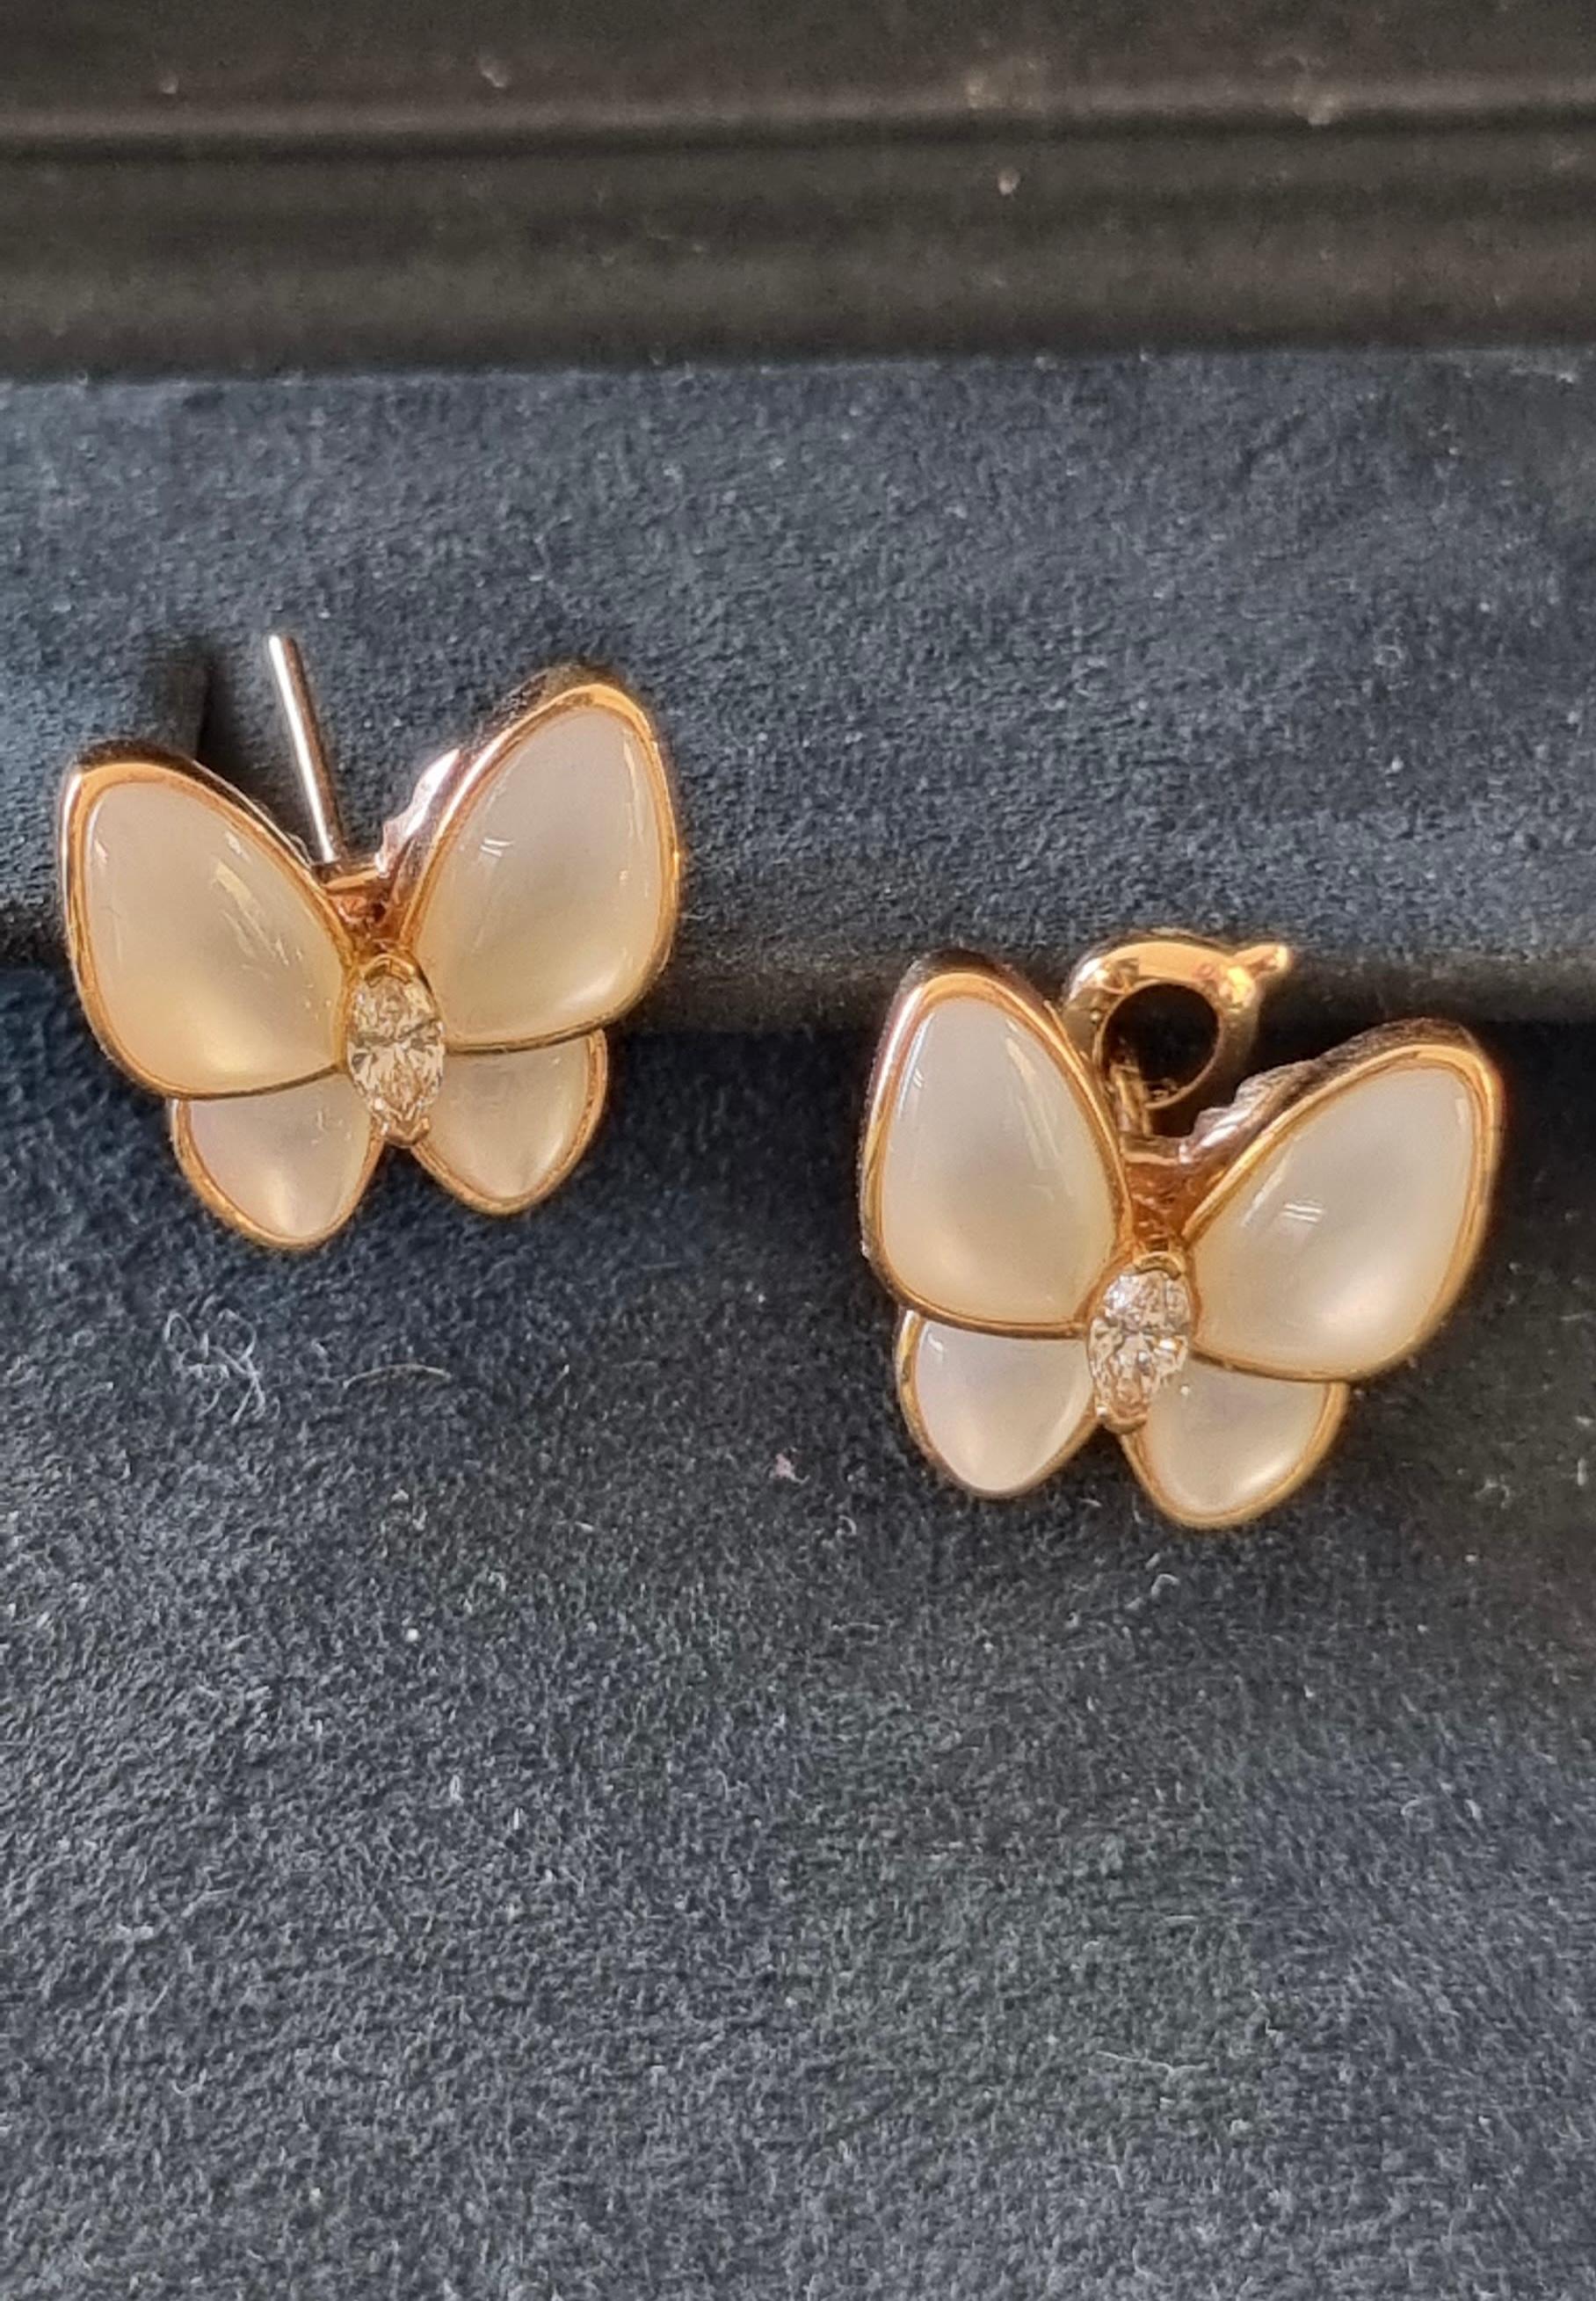 van cleef two butterfly earrings